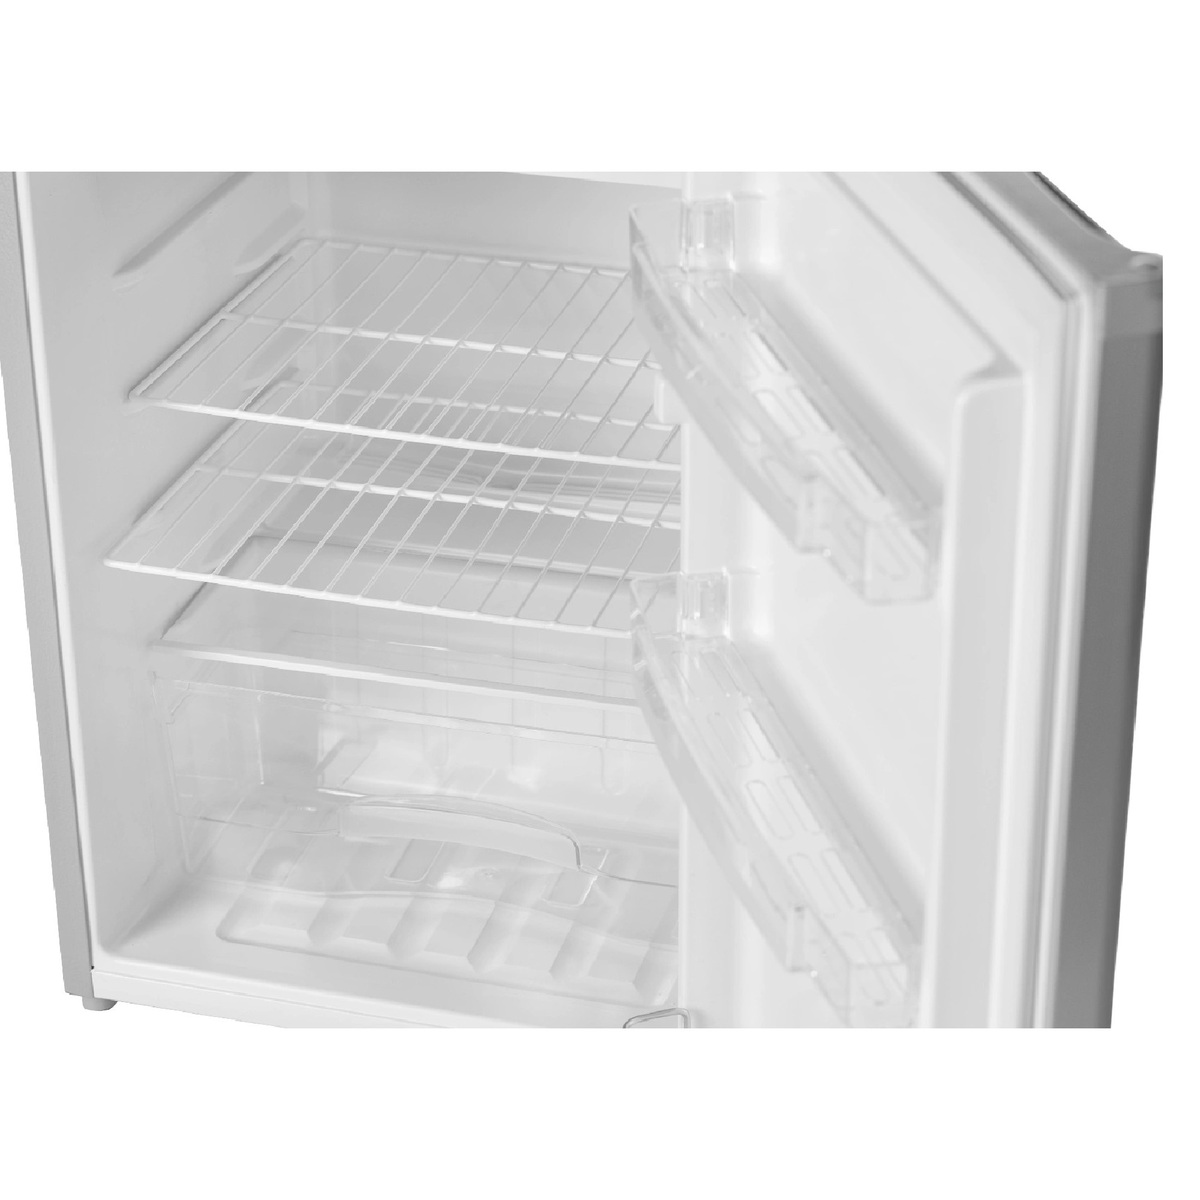 Terim Single Door Refrigerator, 150 L, Silver, TERR150S